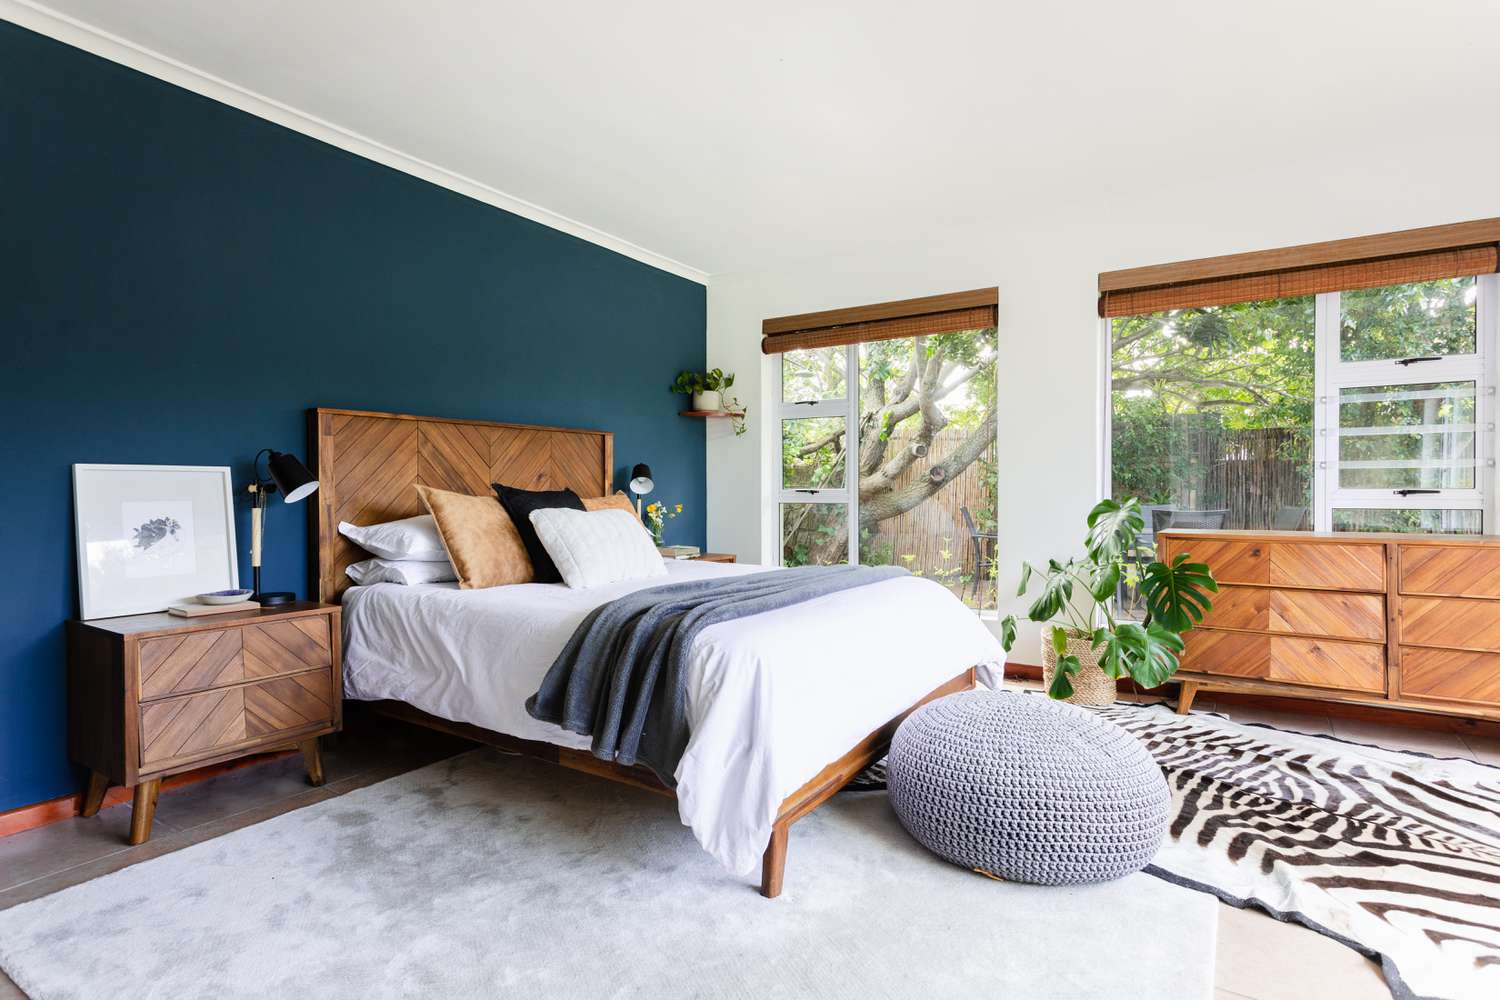 Dormitorio con pared azul marino, muebles modernos y de madera de mediados de siglo y grandes ventanales